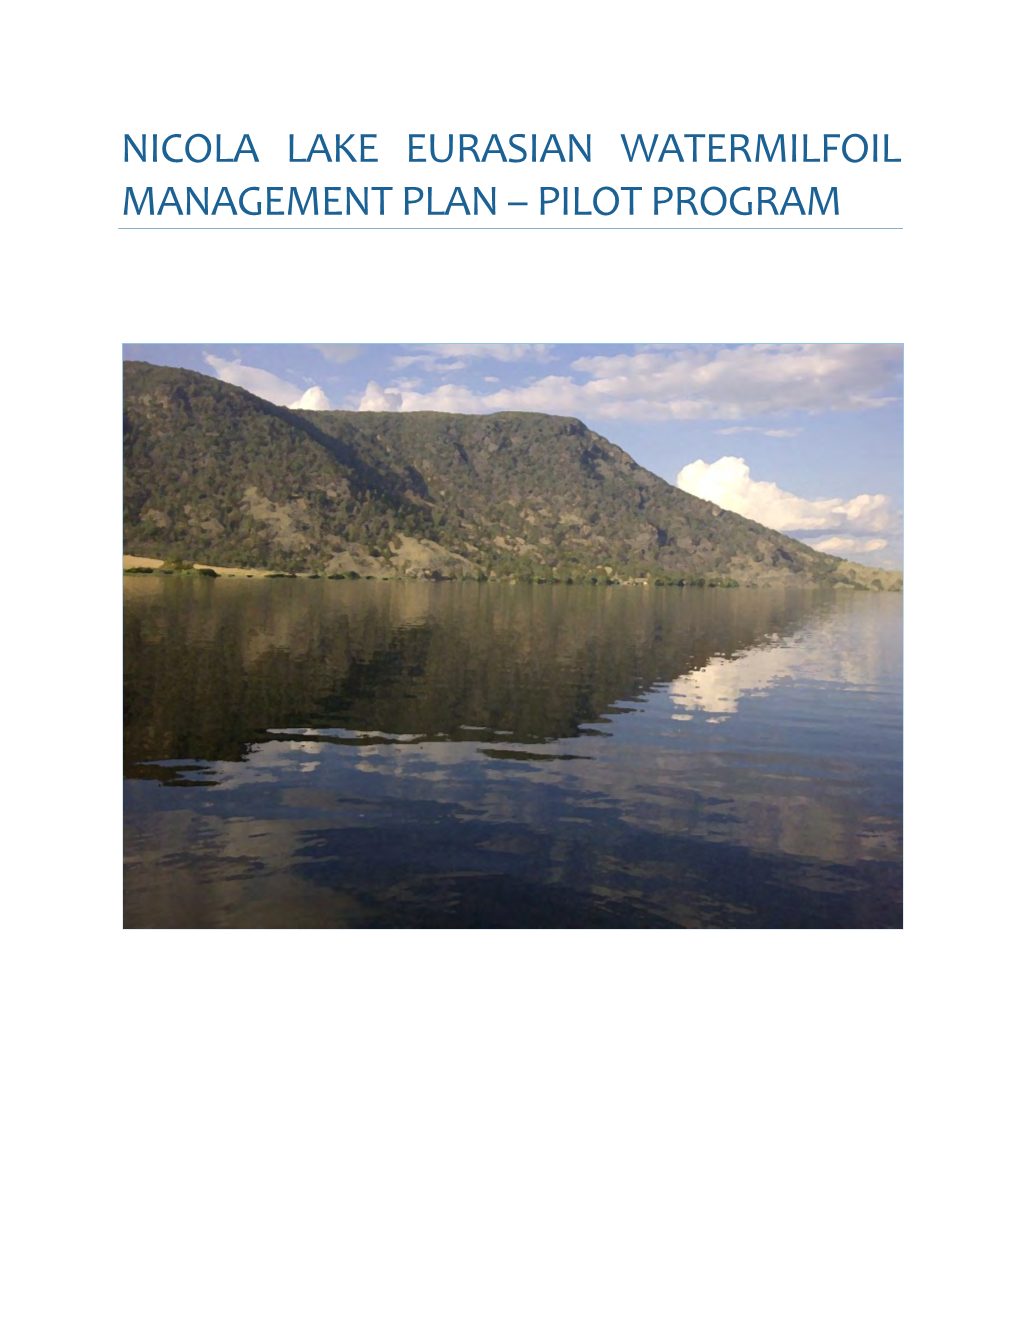 Nicola Lake Eurasian Watermilfoil Management Plan – Pilot Program